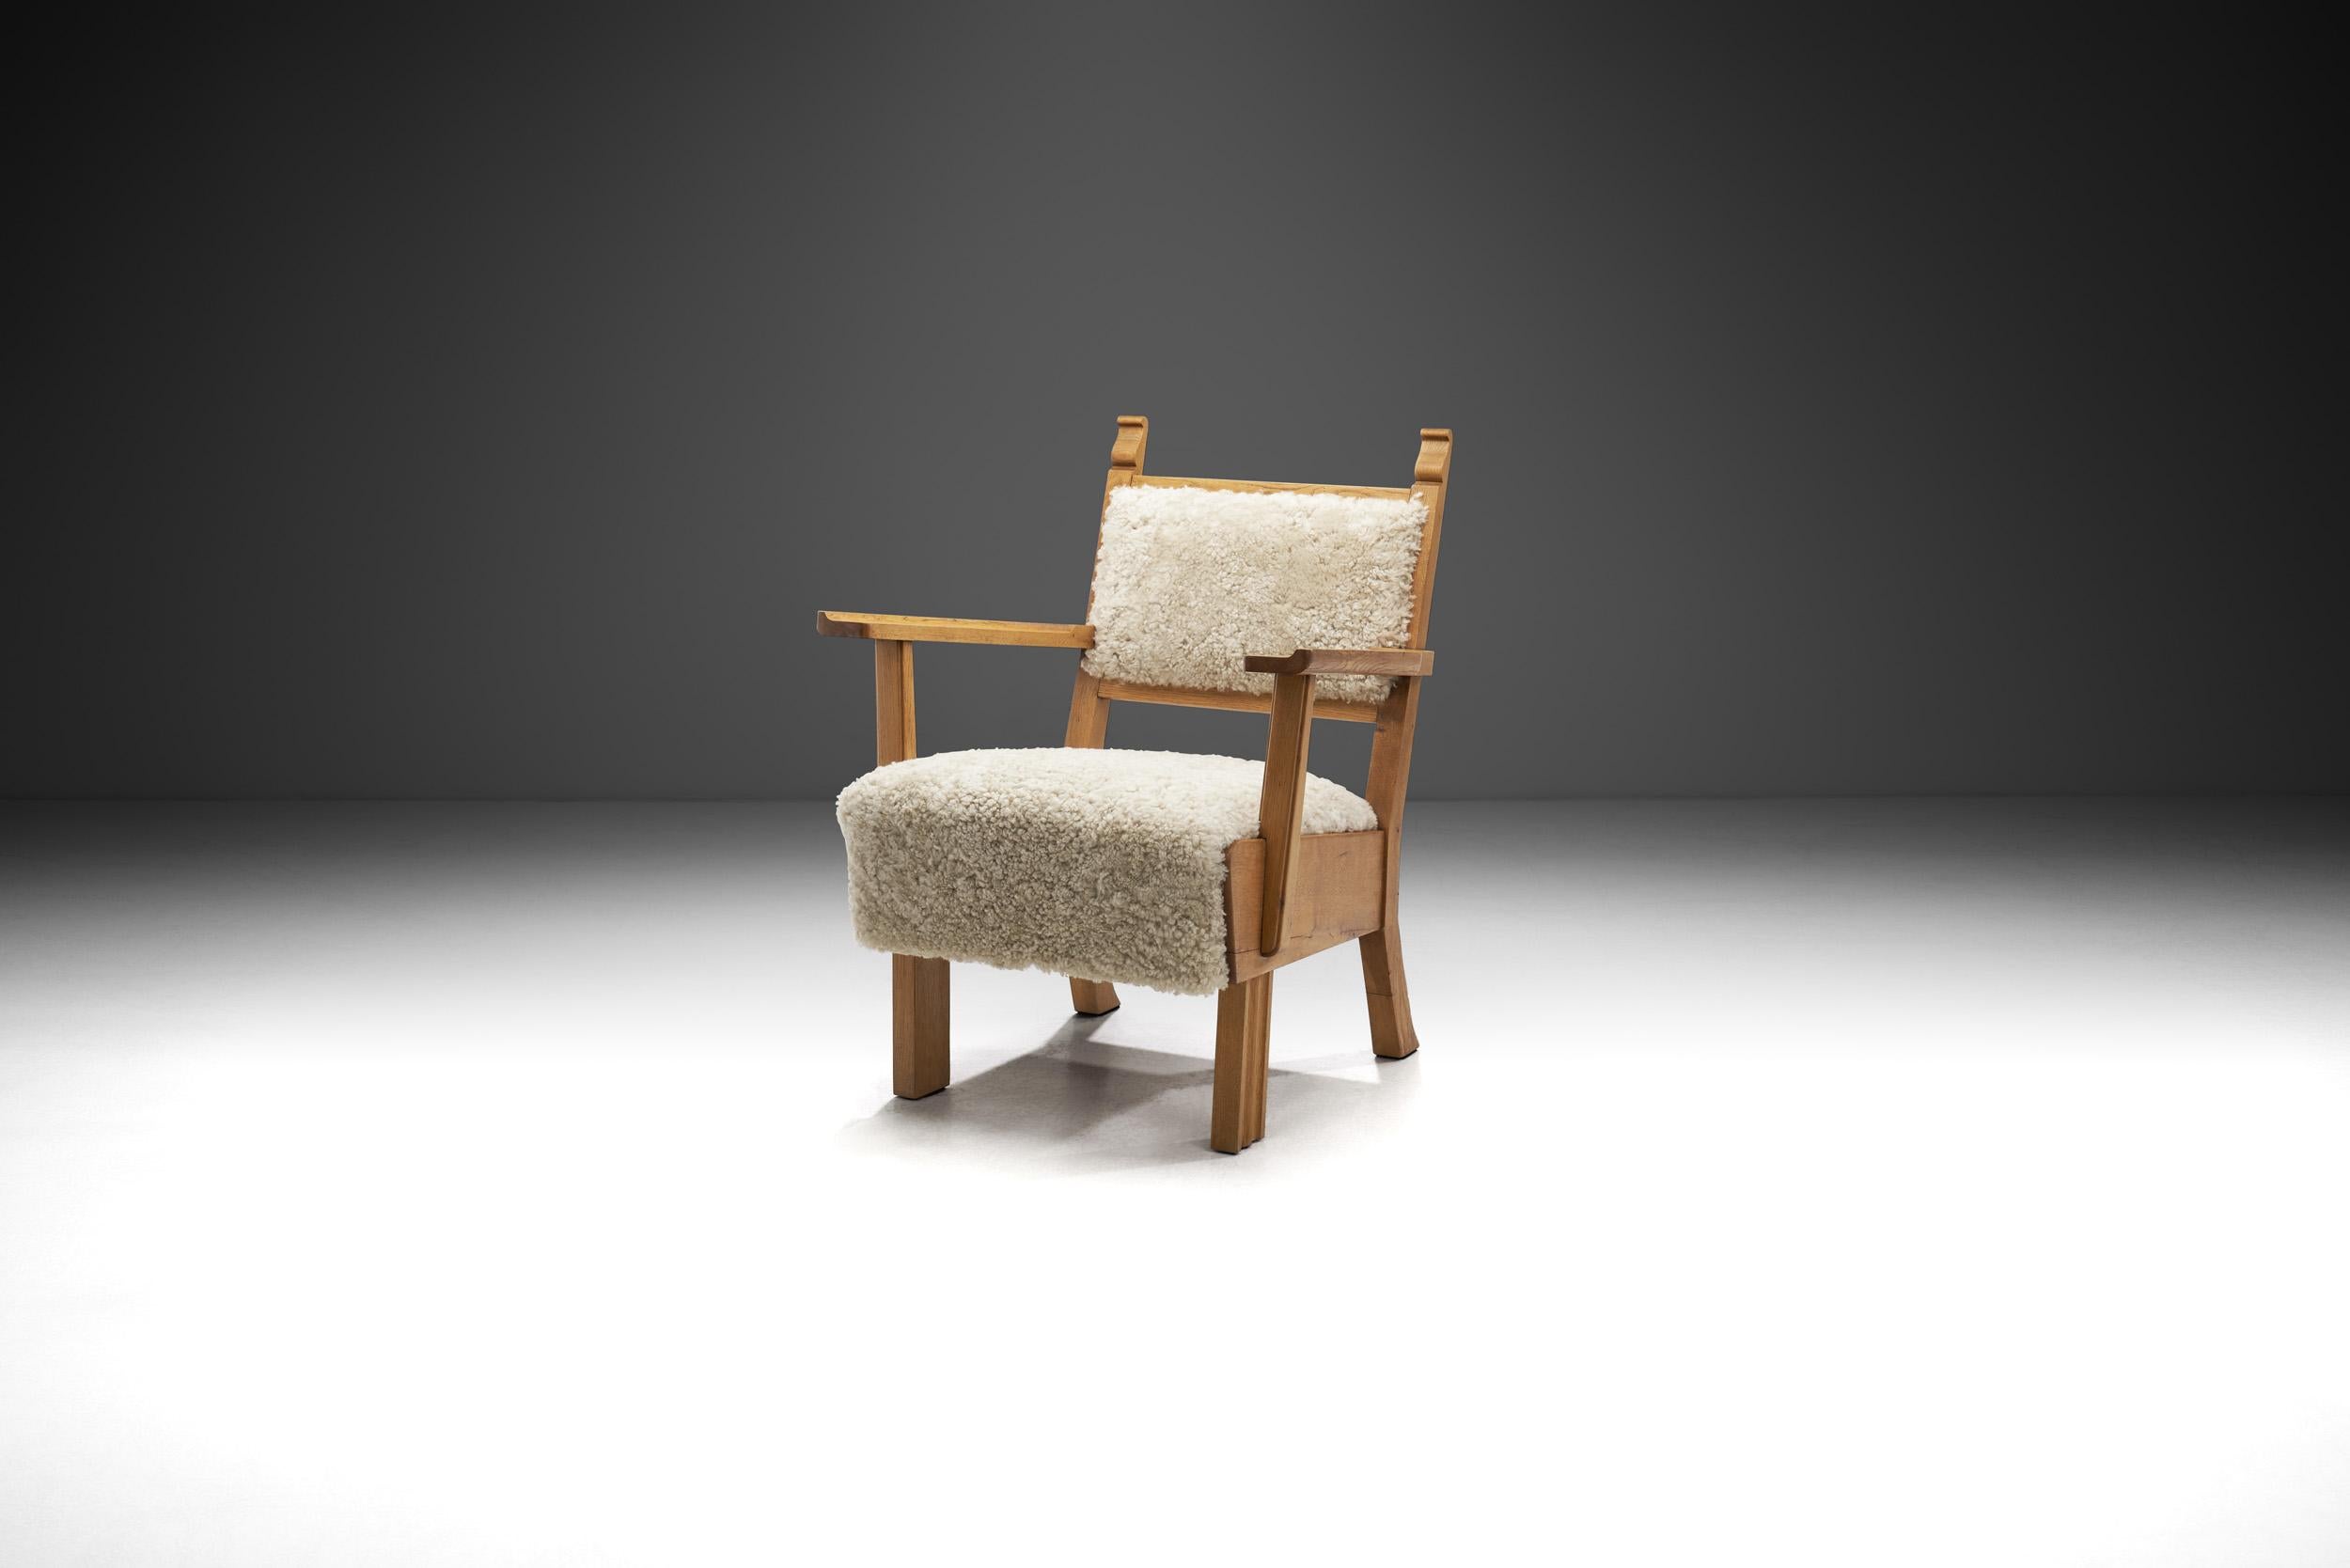 Le mobilier danois du milieu du siècle s'est concentré sur l'esthétique du design moderne tout en utilisant la technique exquise et la connaissance des matériaux des artisans hautement qualifiés tels que les ébénistes. Ce fauteuil moderne précoce